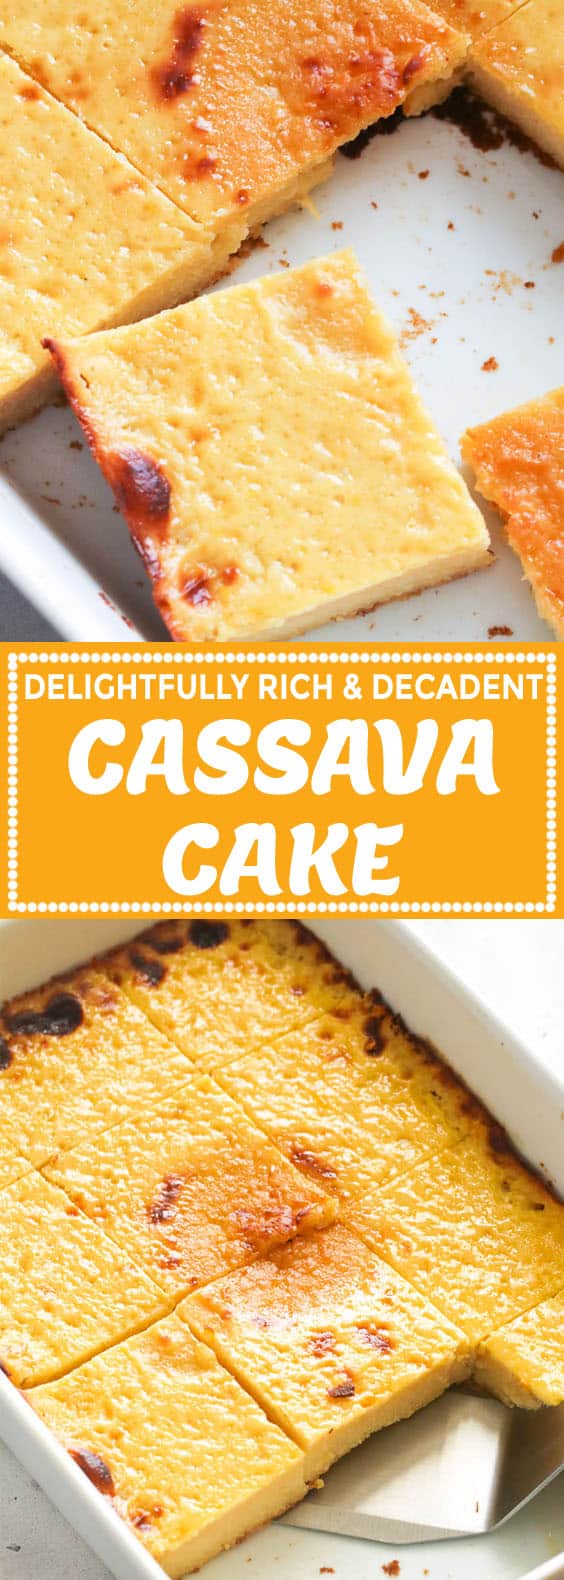 Cassava Cake